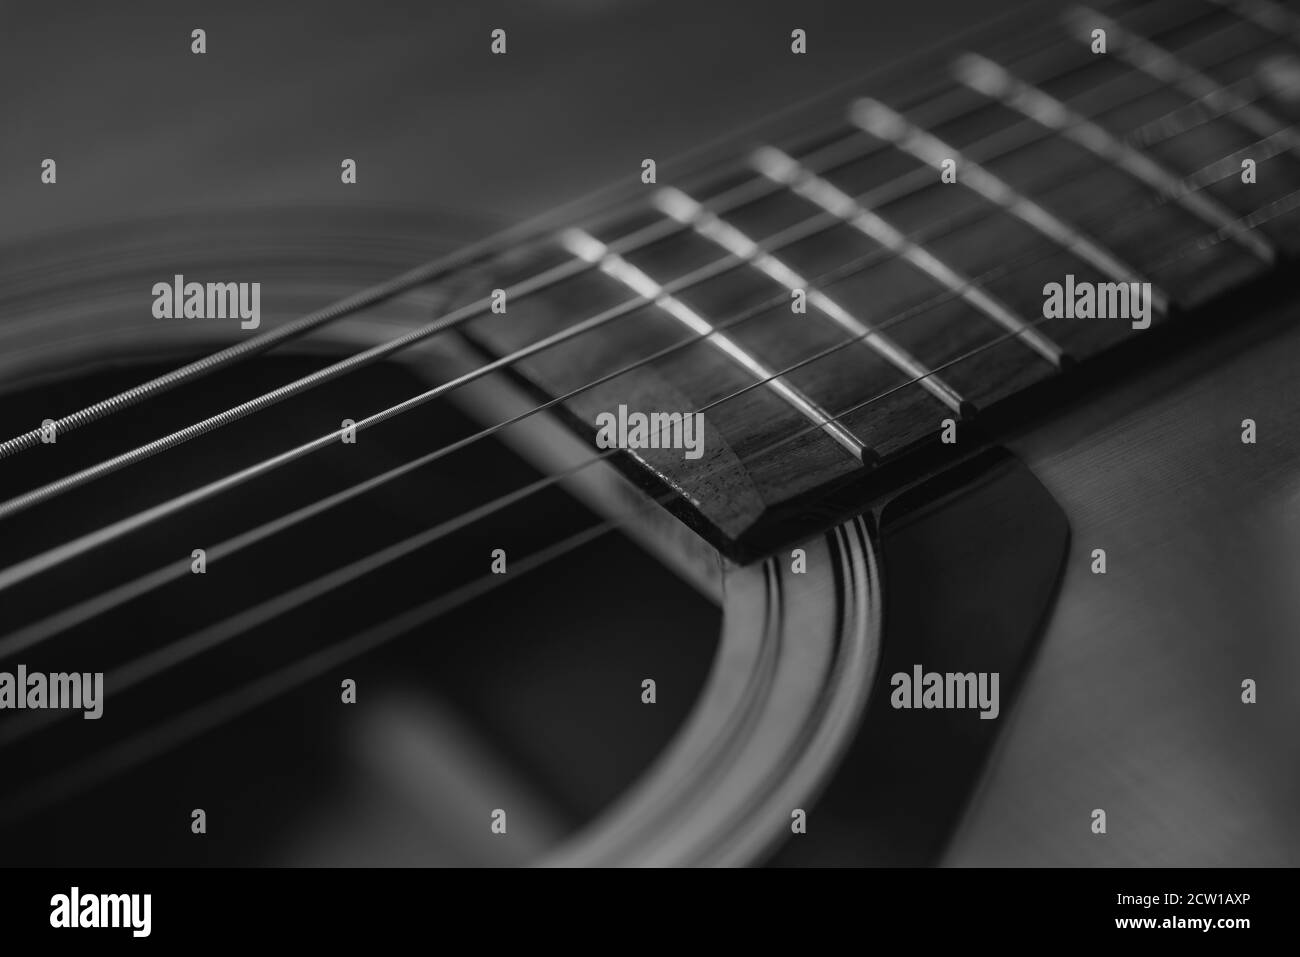 Dettagli di una chitarra acustica, foto dettagliate di una chitarra, corde di chitarra e soundhole, astratto, sfocatura, macrofotografia, bianco e nero Foto Stock